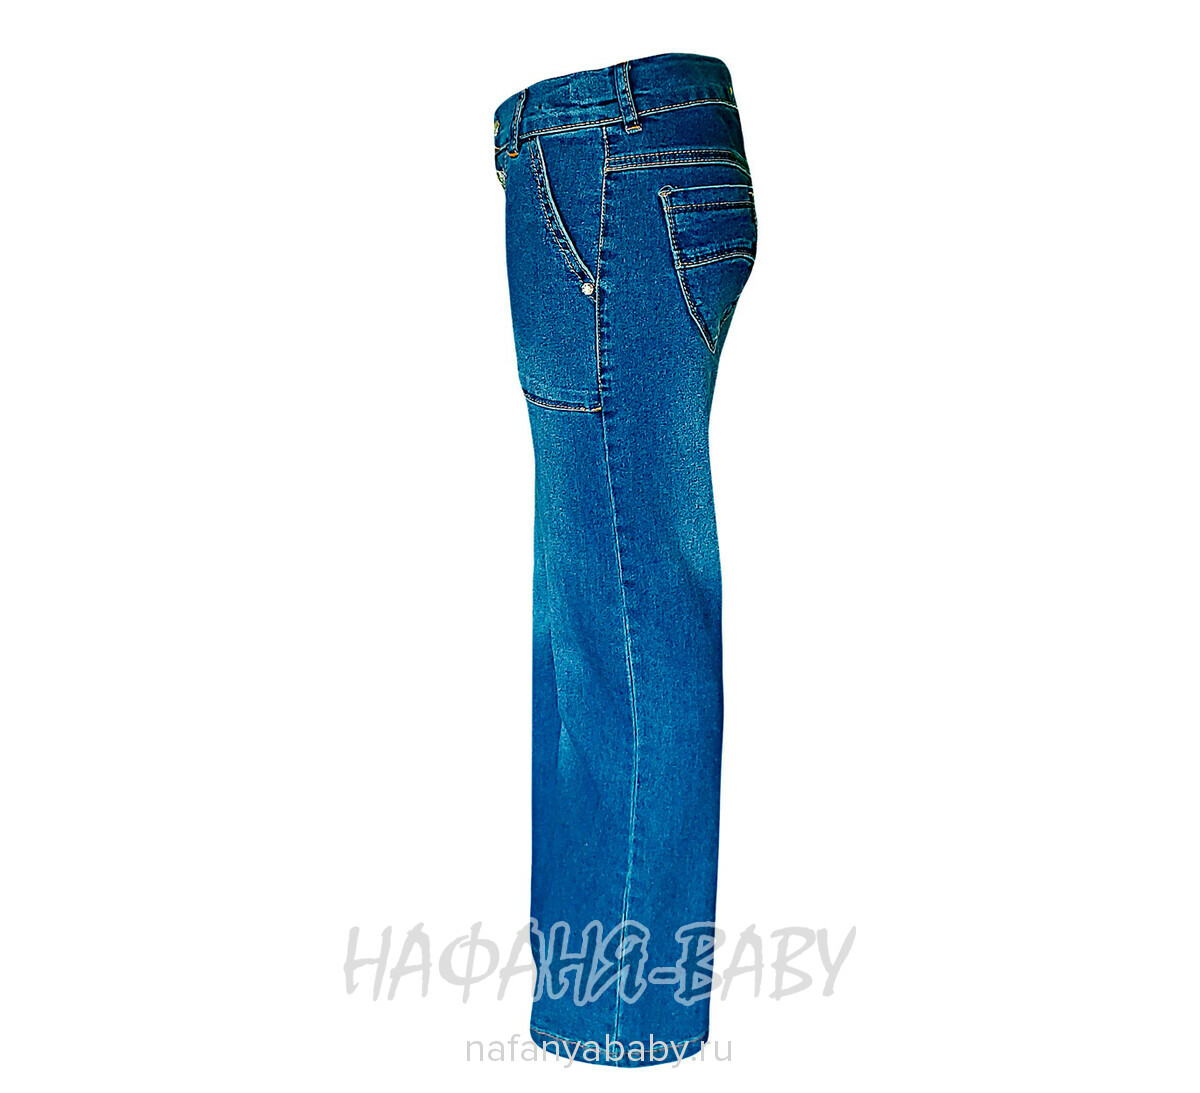 Джинсы подростковые TATI Jeans арт: 8925 для девочки от 8 до 12 лет, цвет синий, оптом Турция